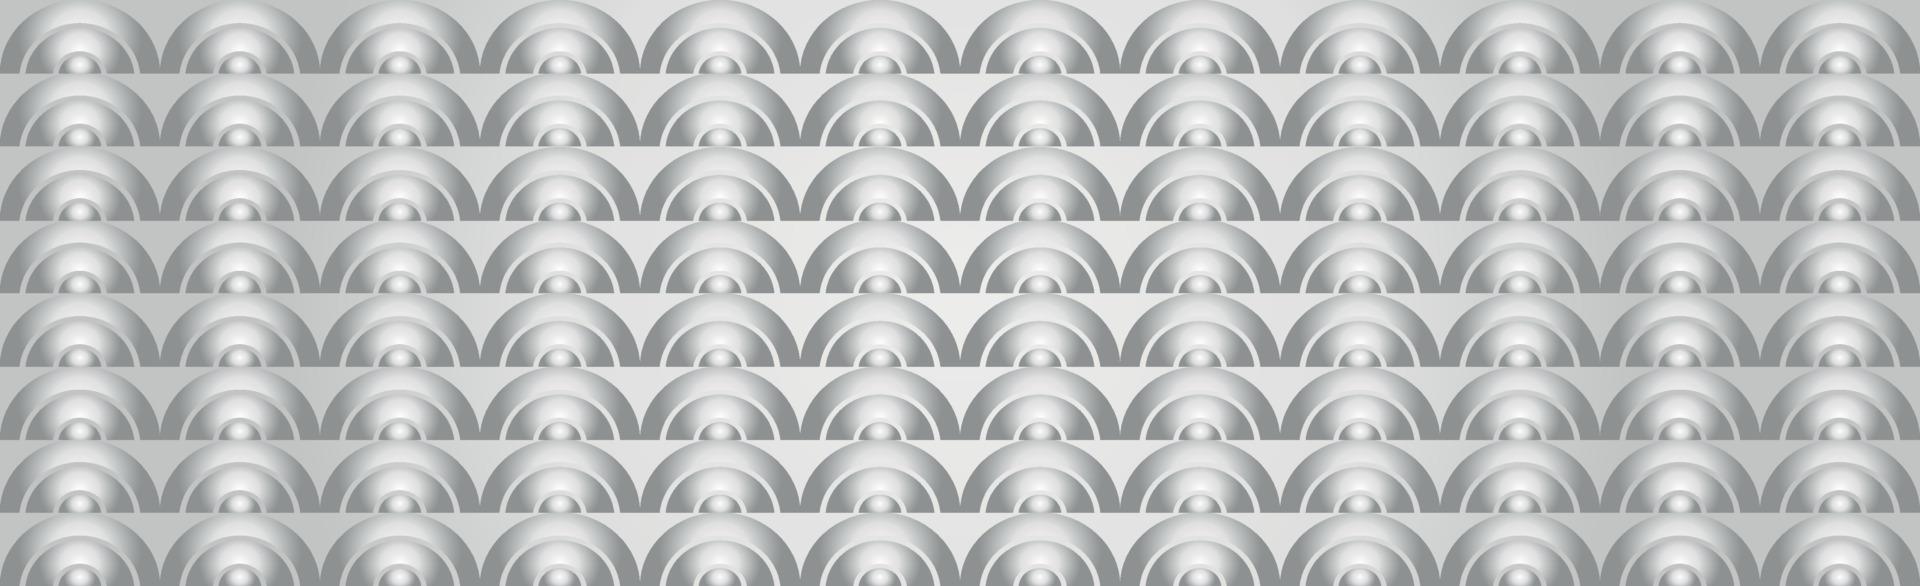 abstrakt bakgrund grå - vita volymetriska rektanglar - vektor